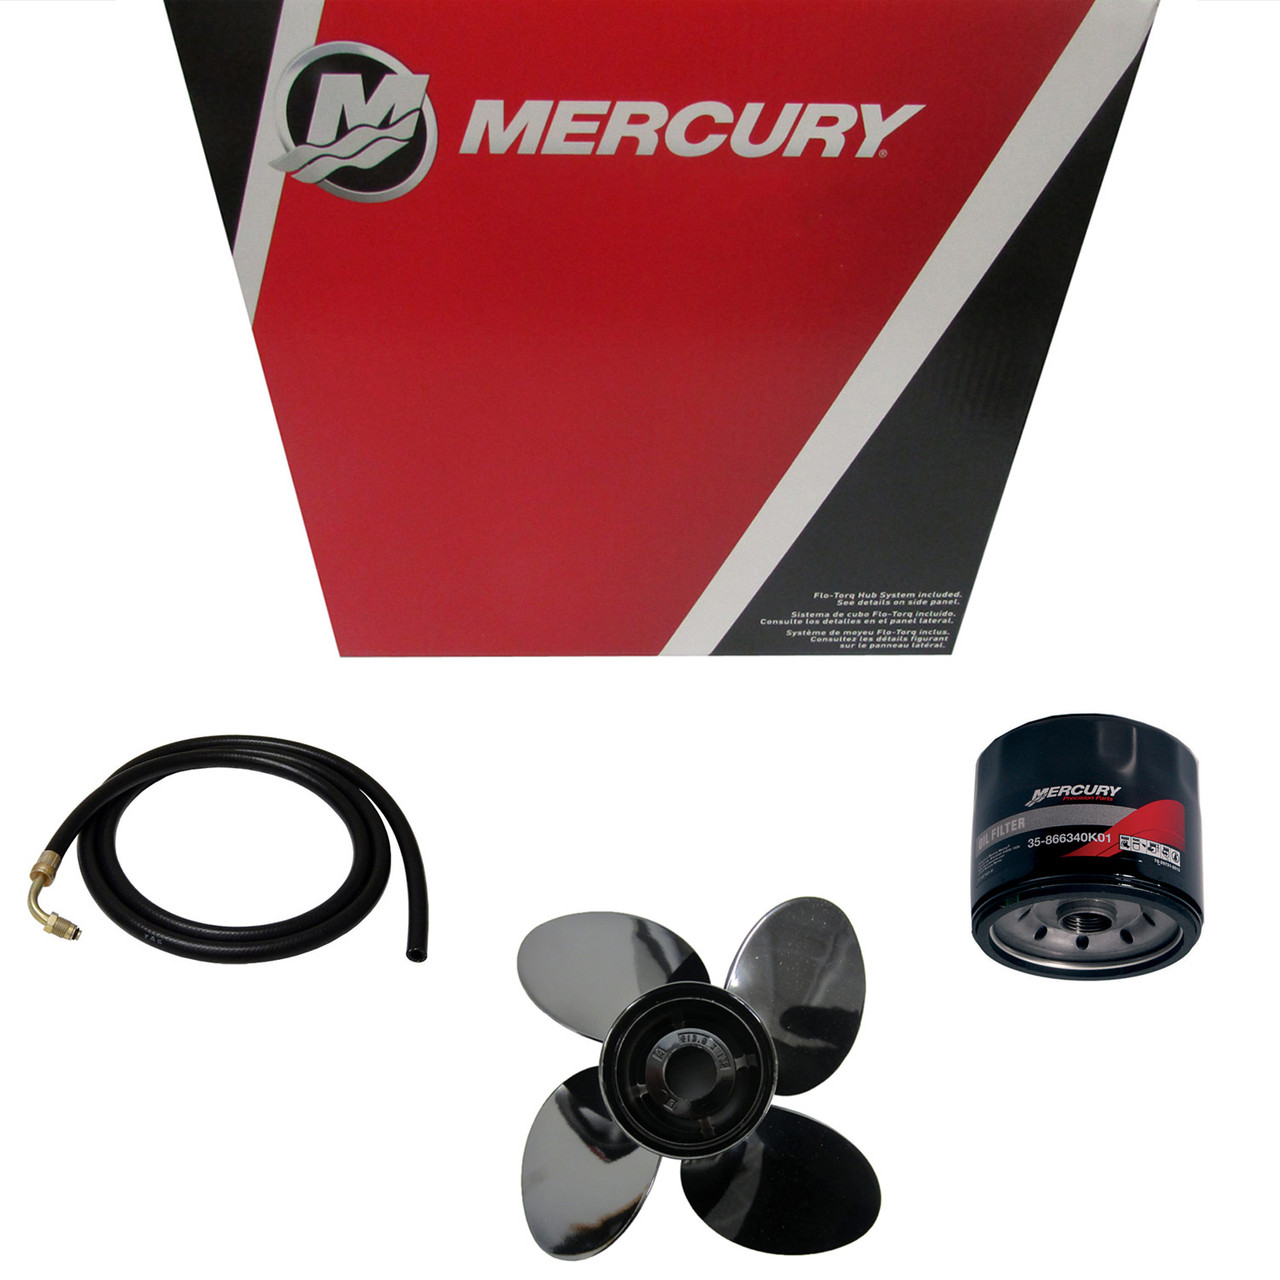 Mercury Marine / Mercruiser New OEM Plug, 823874001